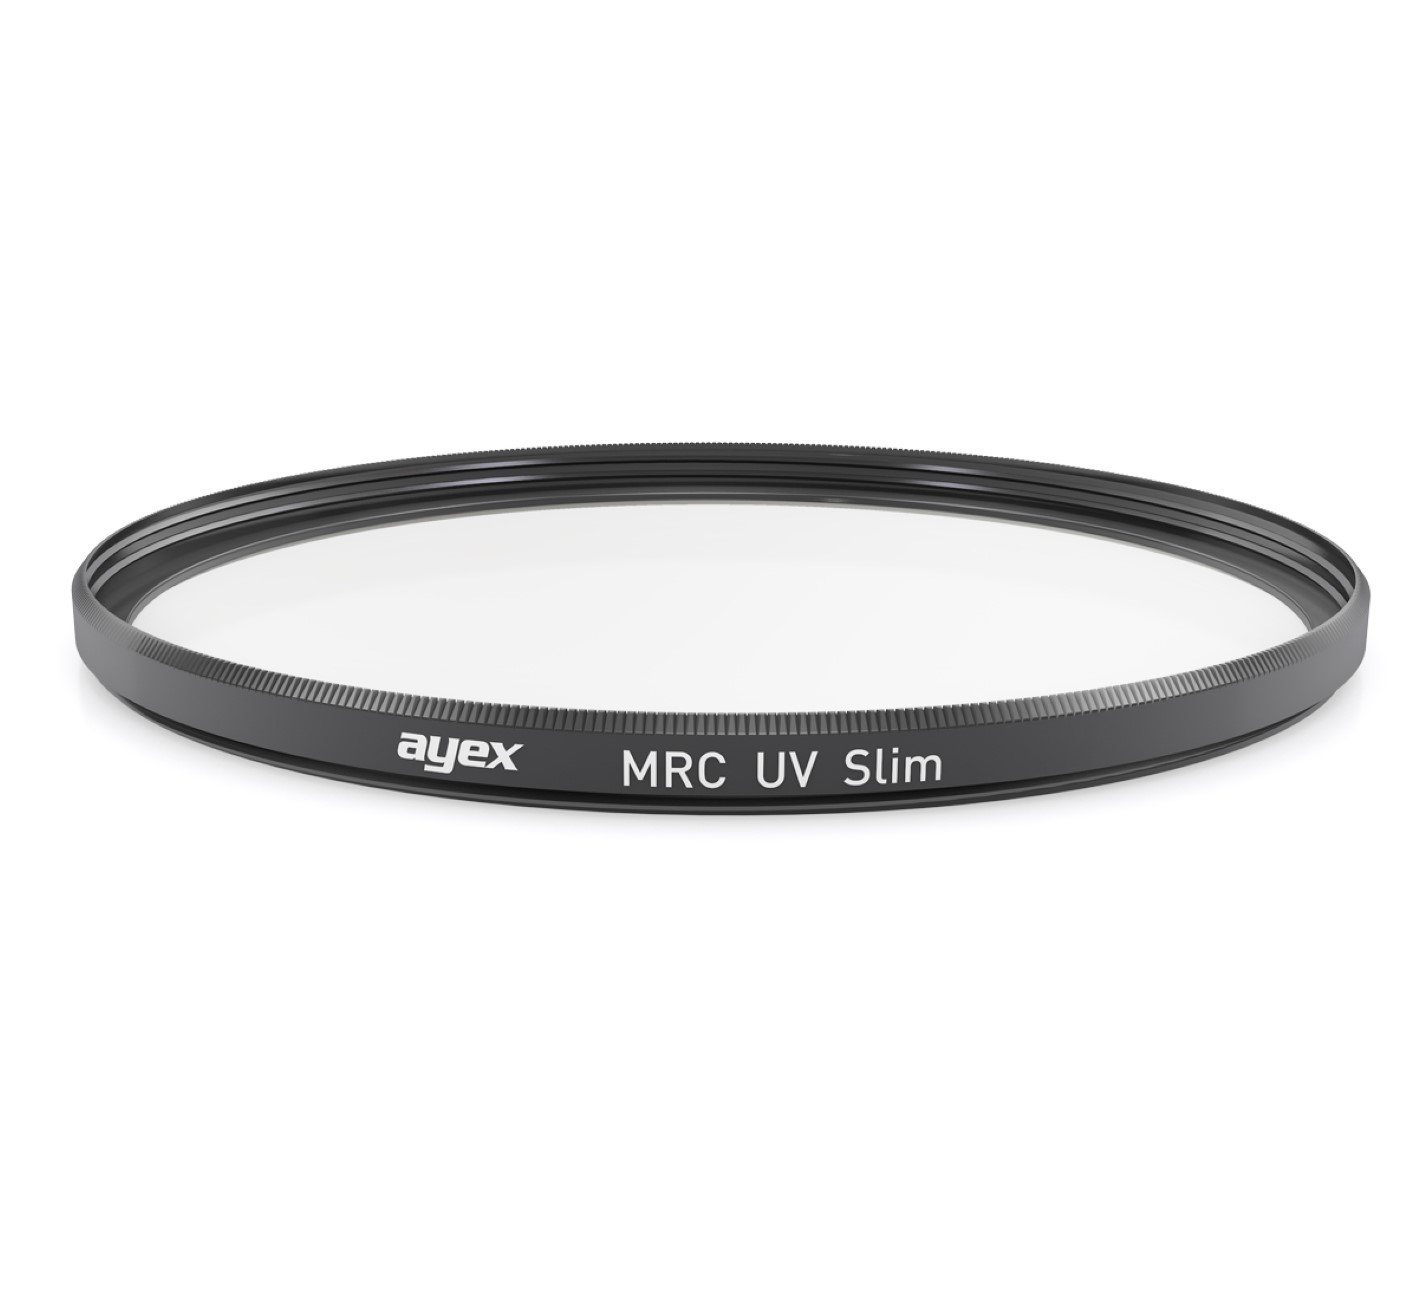 hochwertiger MehrfachVergütung UV-Filter ayex mit MRC Foto-UV-Filter slim 77mm beidseitig